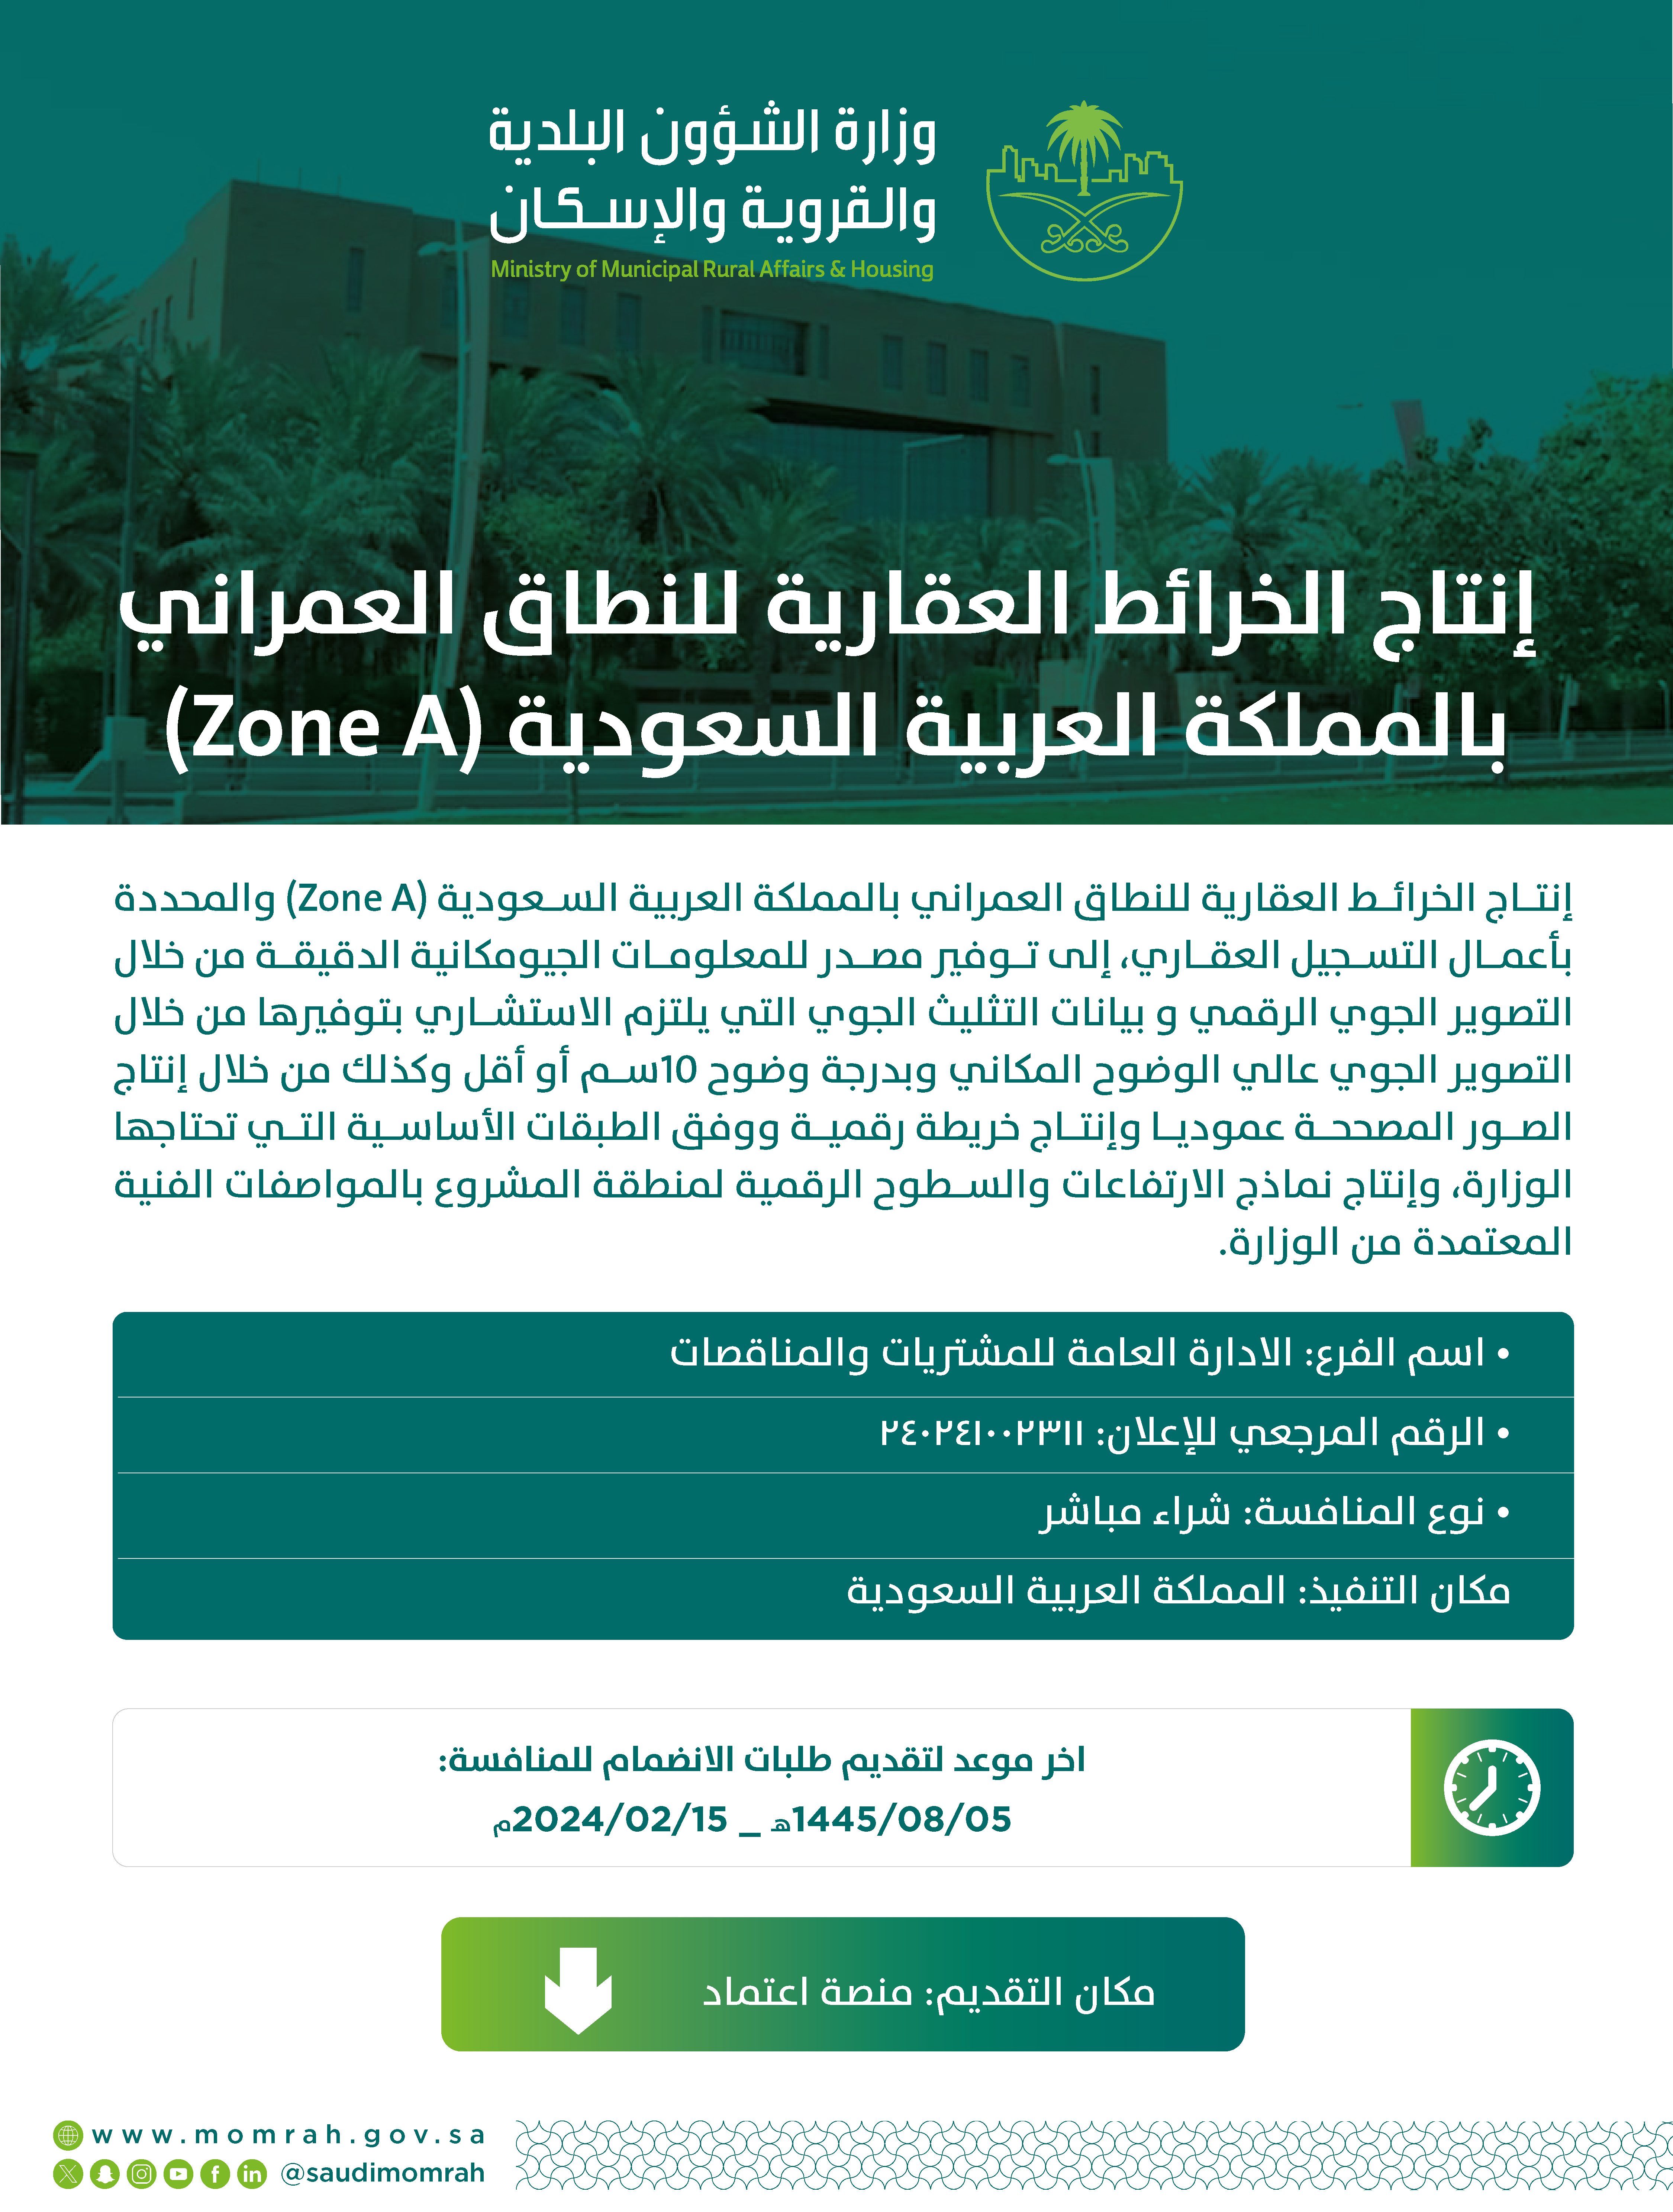 اعلان مشروع إنتاج الخرائط العقارية للنطاق العمراني بالمملكة العربية السعودية (Zone A)